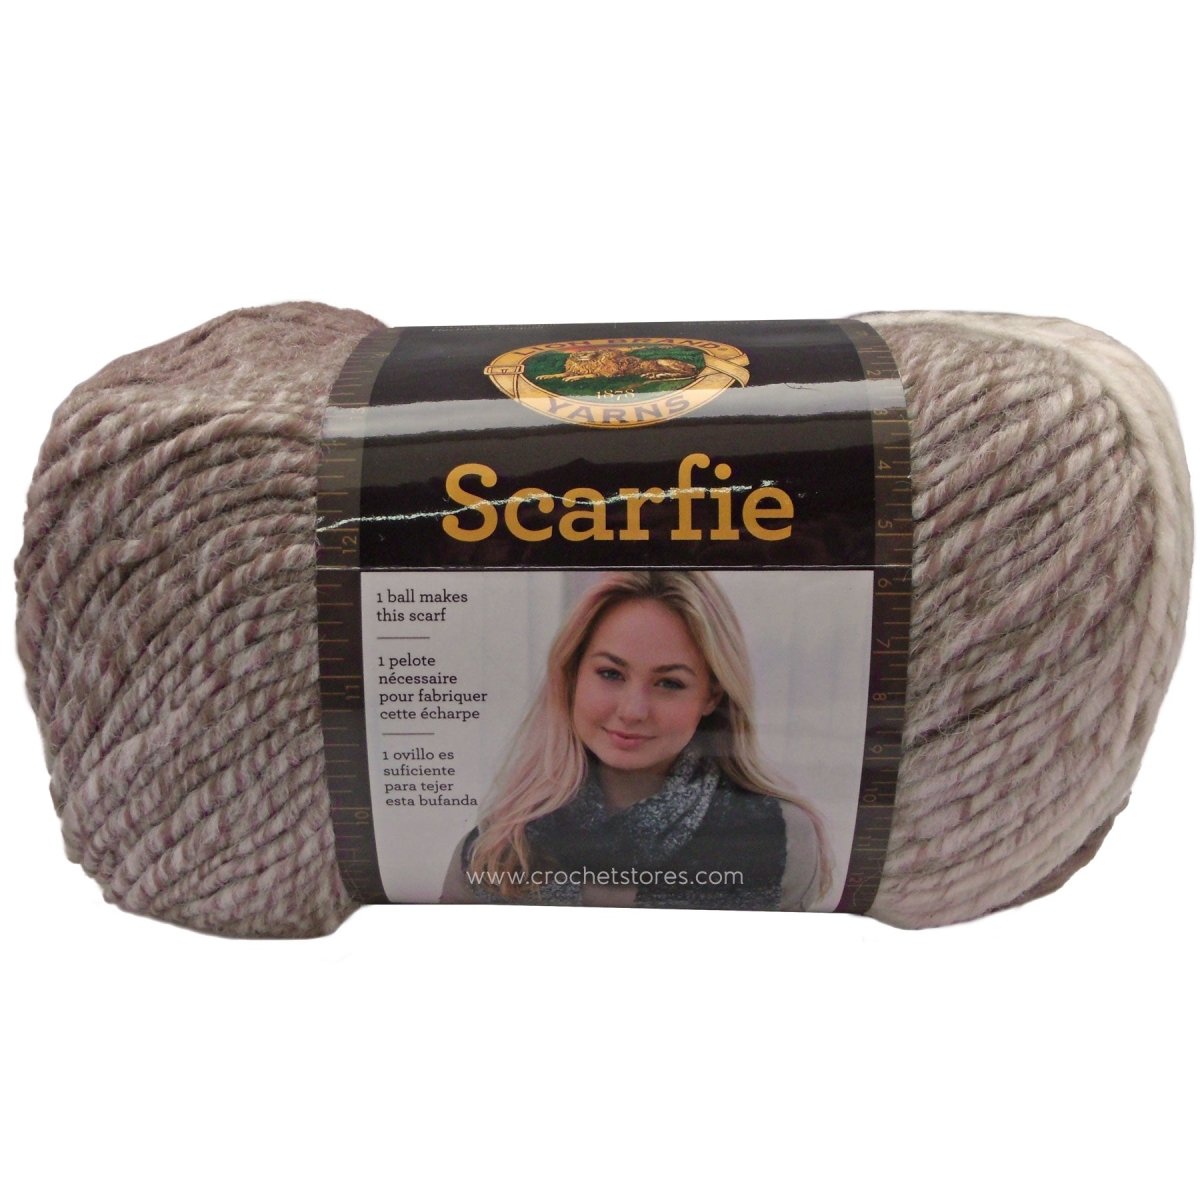 SCARFIE - Crochetstores826-206